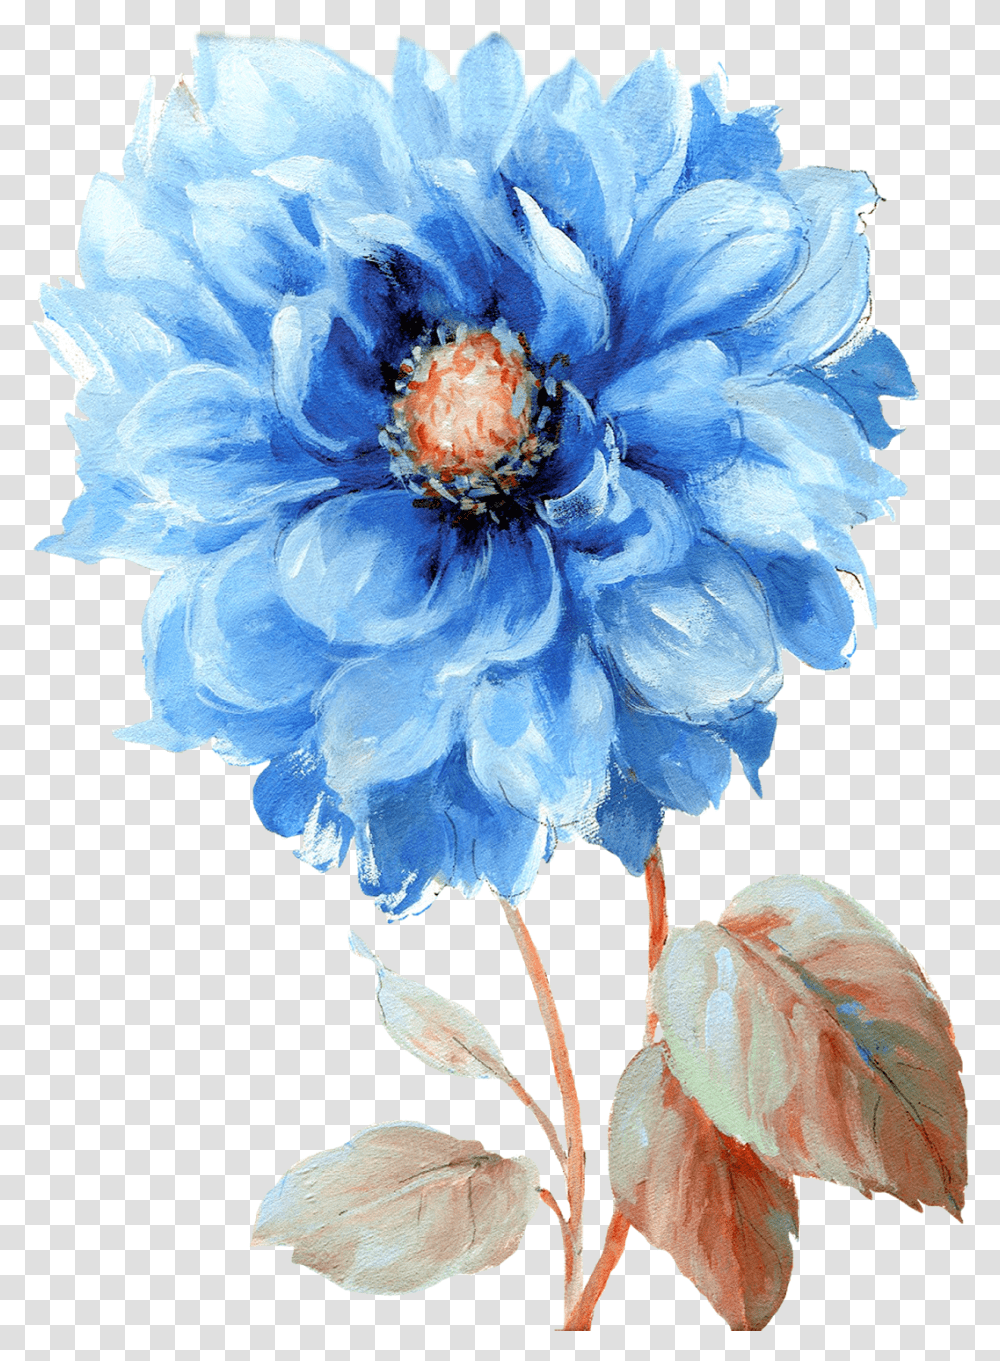 Watercolor Flowers Royal Blue Flower Painting By Cuadros En Tela Para Sala, Plant, Geranium, Pollen, Petal Transparent Png